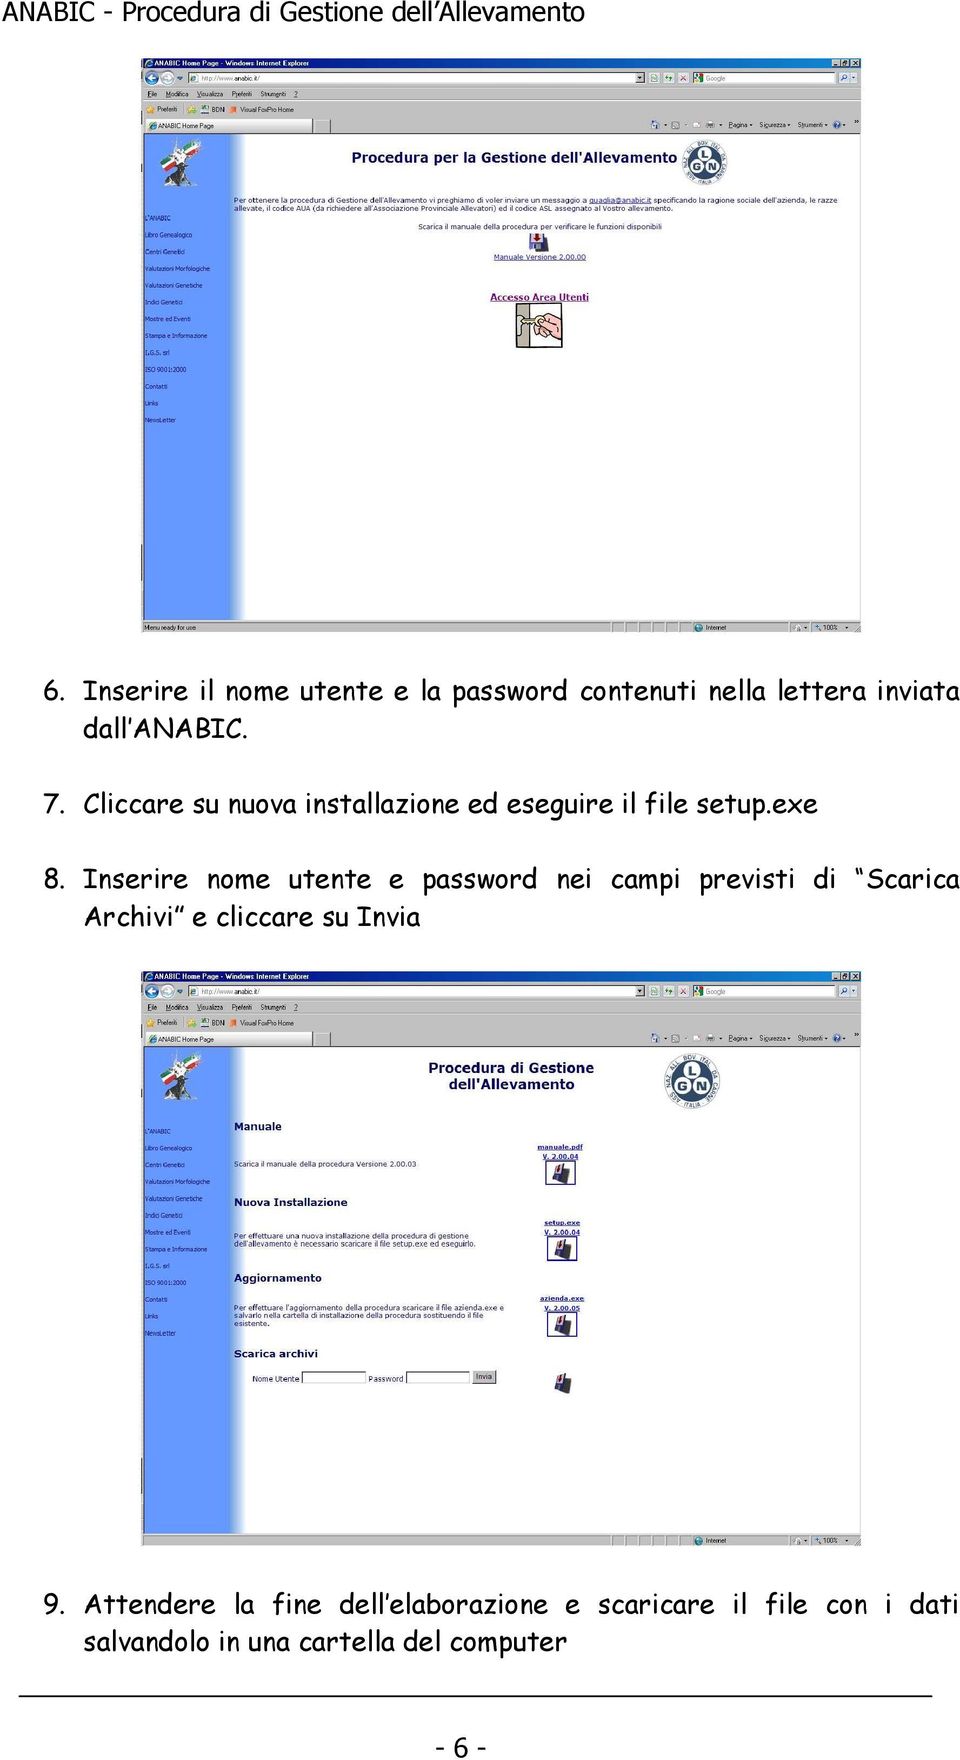 Inserire nome utente e password nei campi previsti di Scarica Archivi e cliccare su Invia